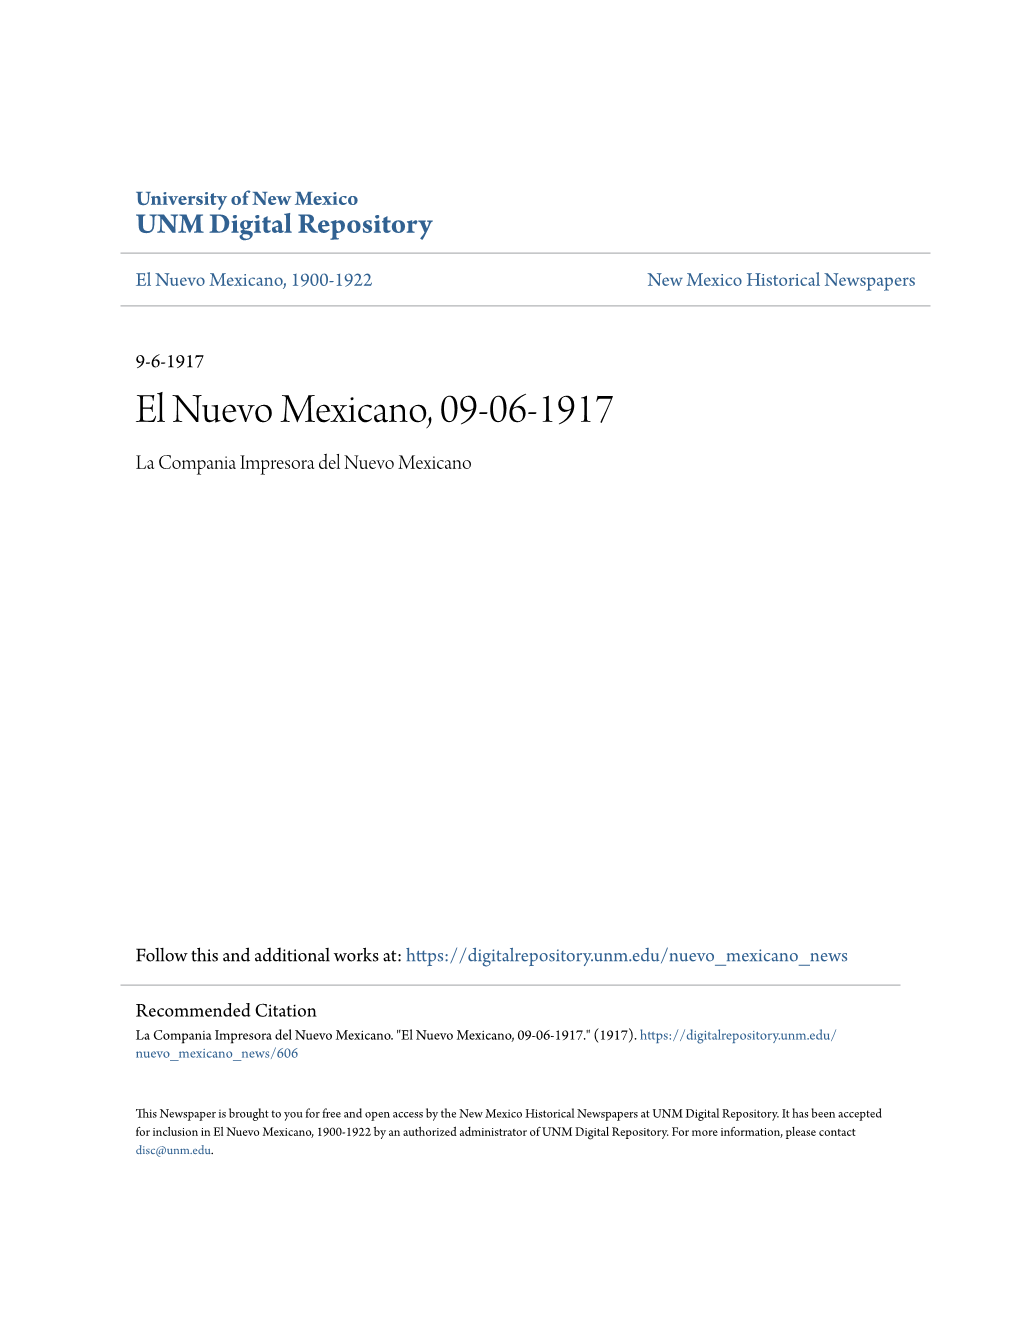 El Nuevo Mexicano, 09-06-1917 La Compania Impresora Del Nuevo Mexicano